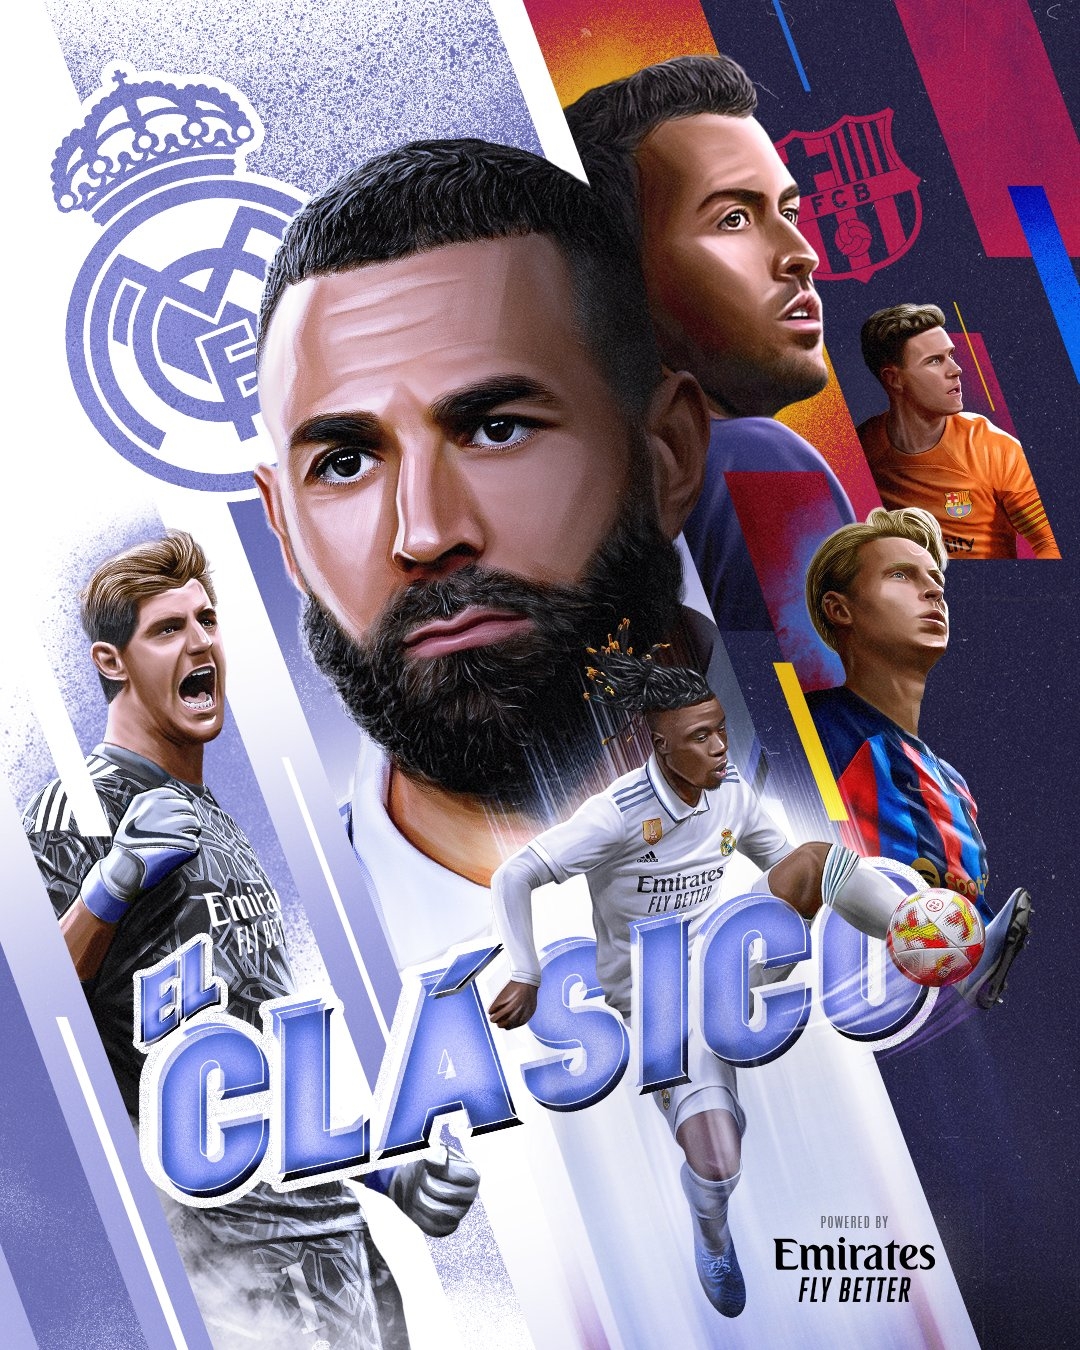 国际足球 | 三冠王–皇家马德里 | Rins99.com︱原创足球壁纸设计